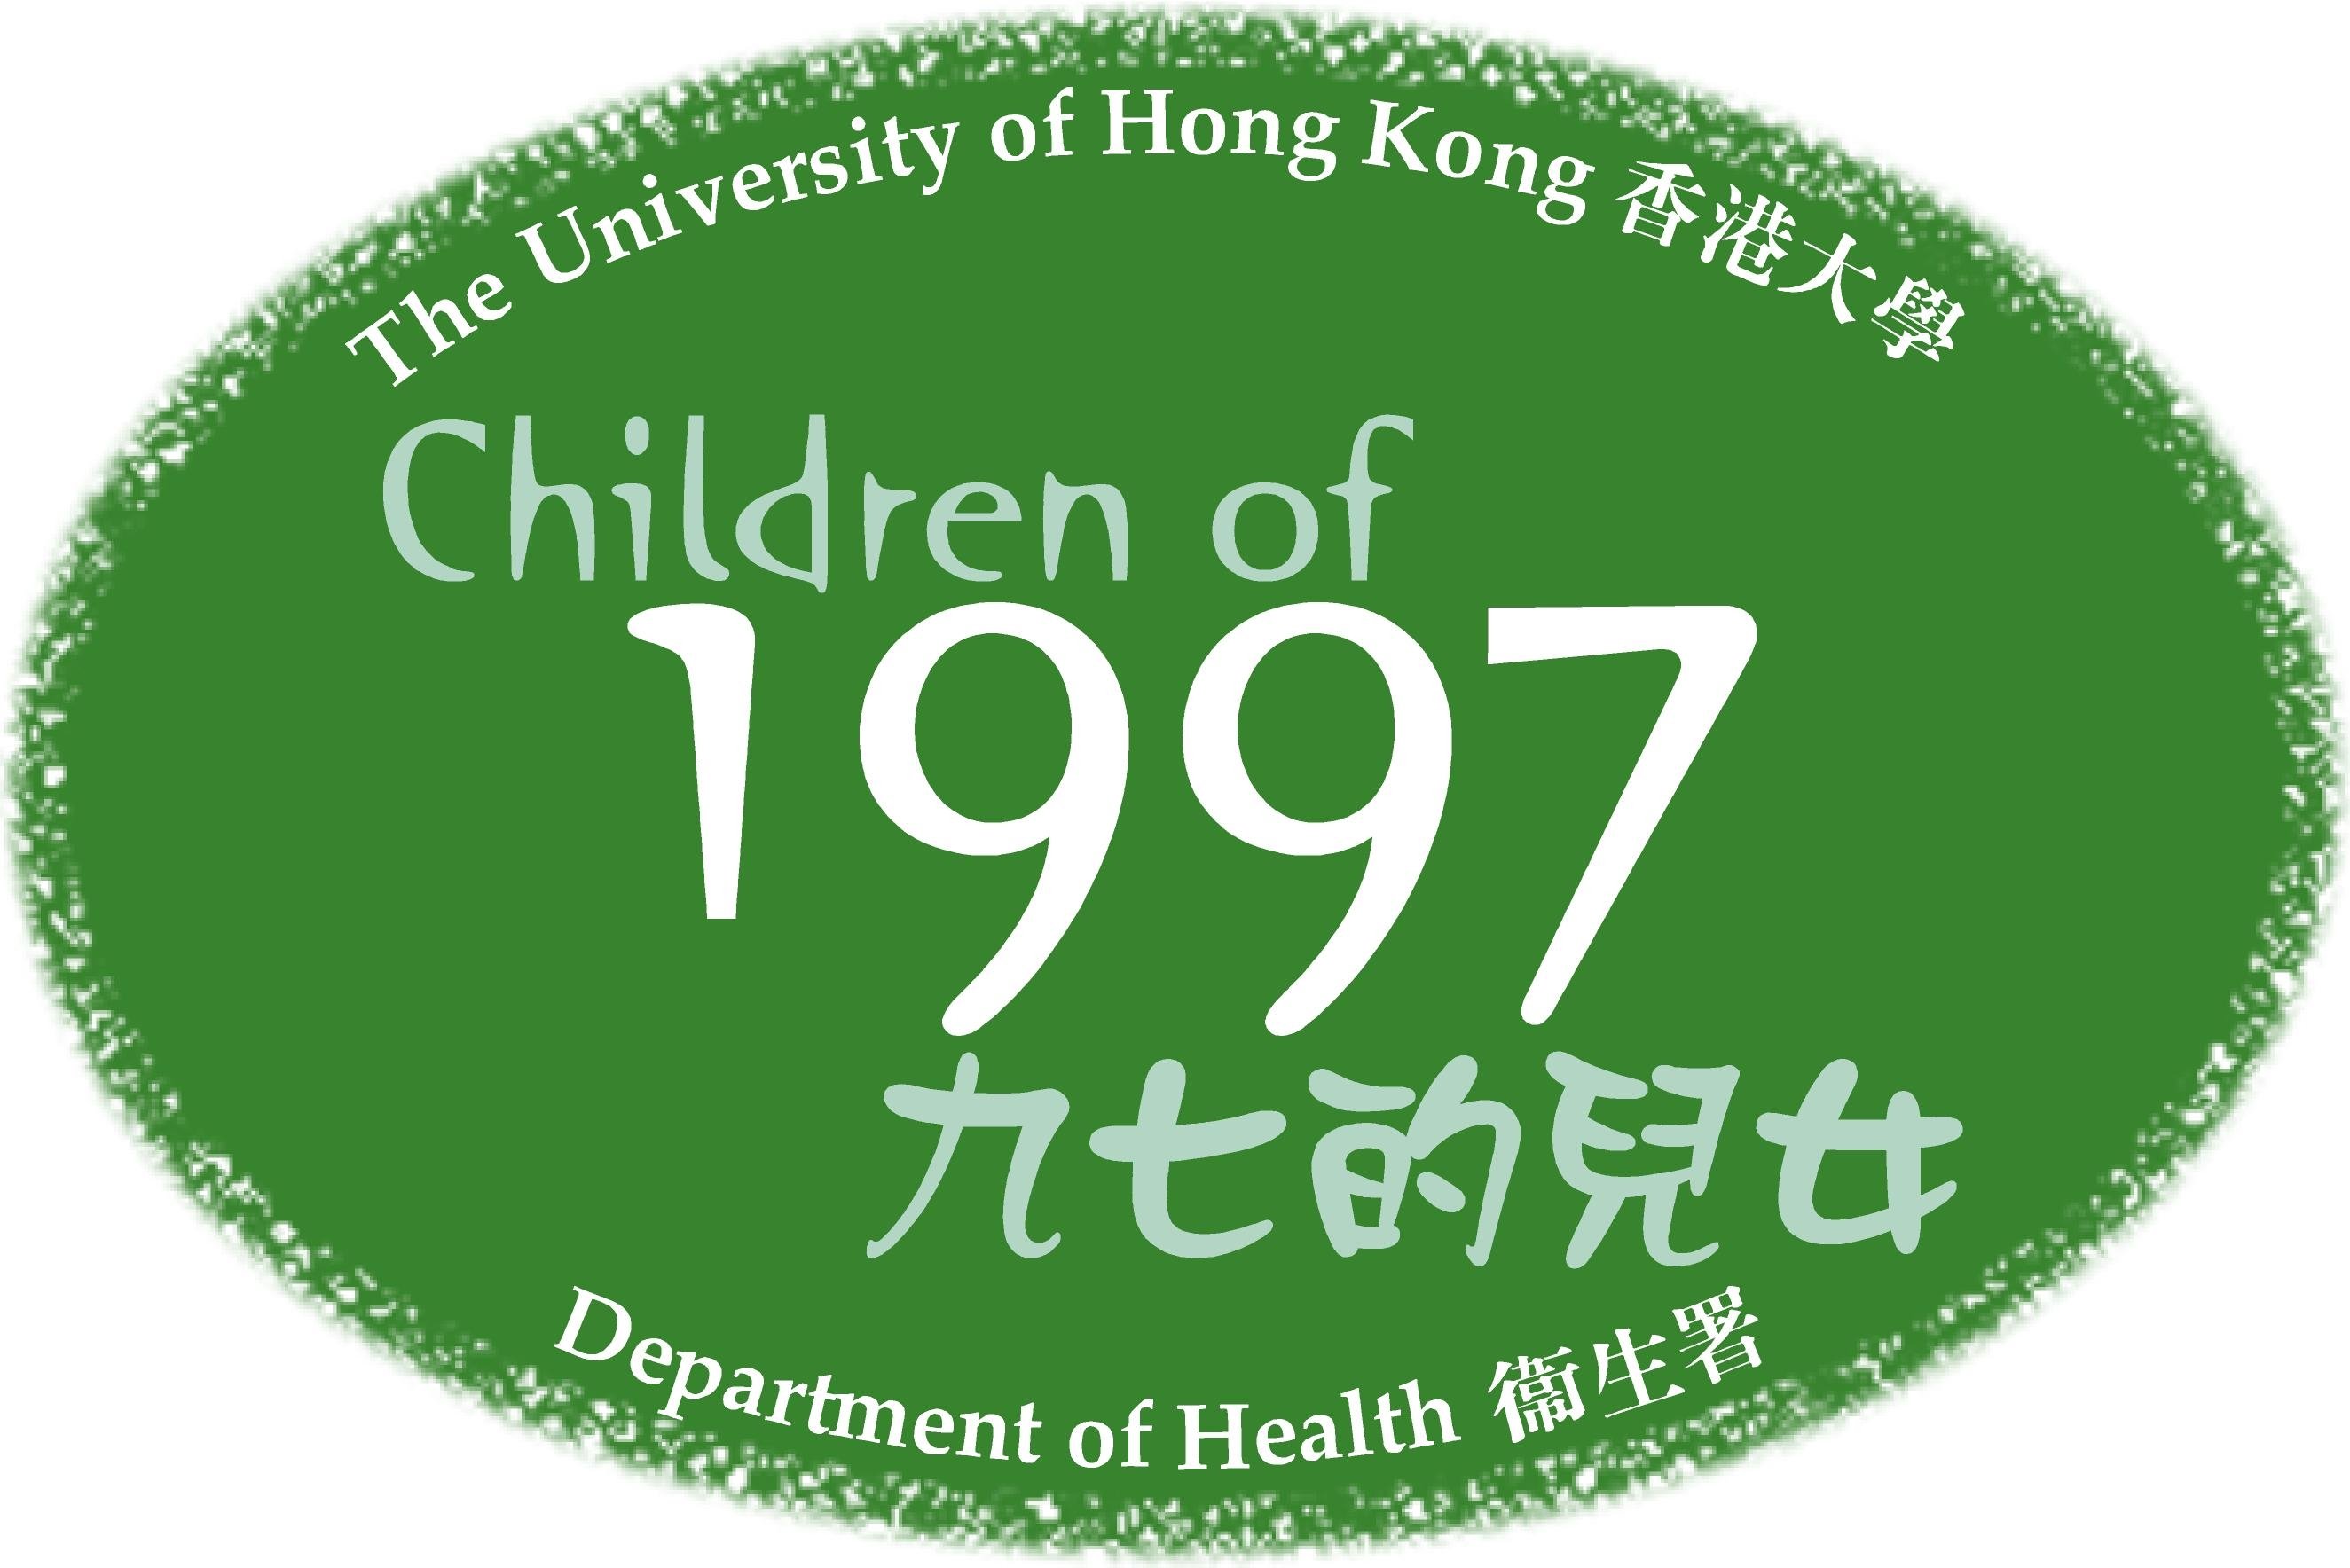 歡迎來到「九七的兒女」出生隊列研究😀
我們是一項在一九九七年開展的香港出生隊列研究，眾多在一九九七年四至五月期間出生的孩子都參與了此項計劃，是目前亞洲區內最具規模並代表中國人民的出生隊列。